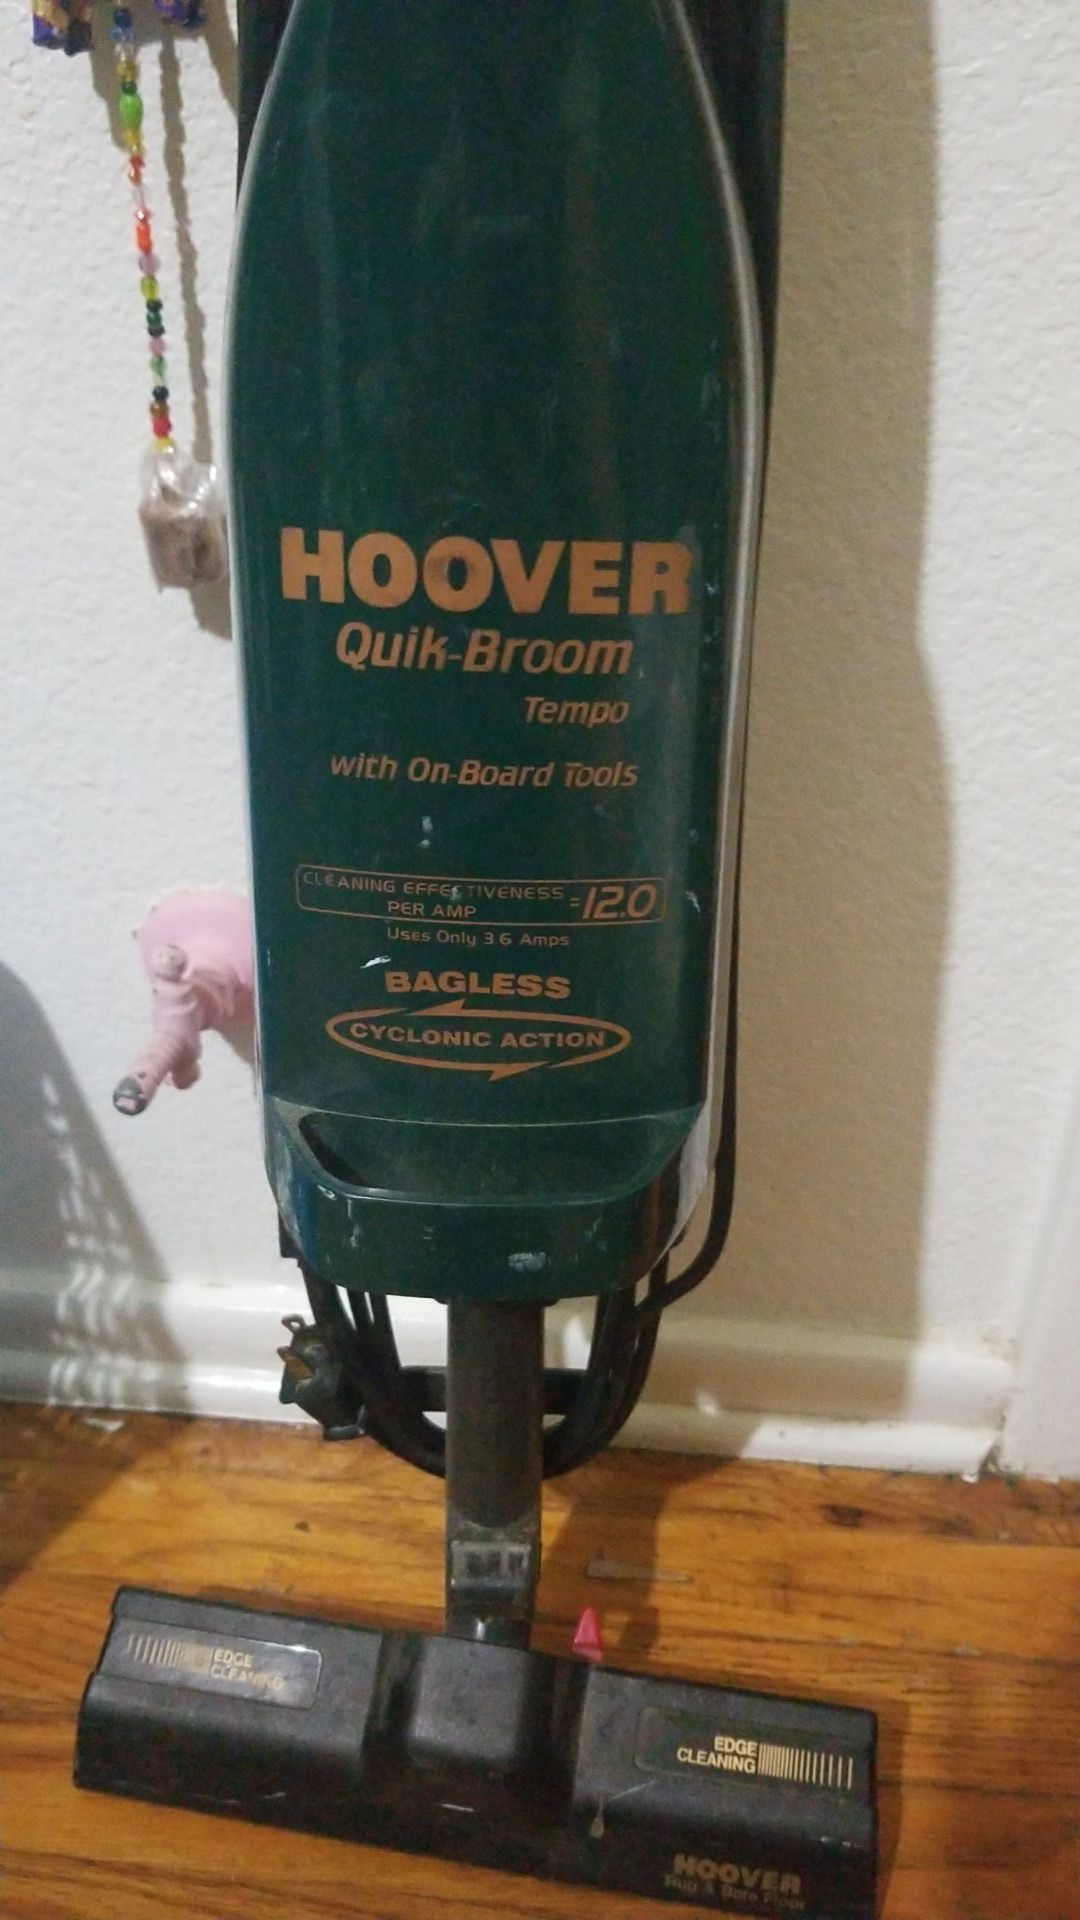 Hoover "quick Broom" vacuum